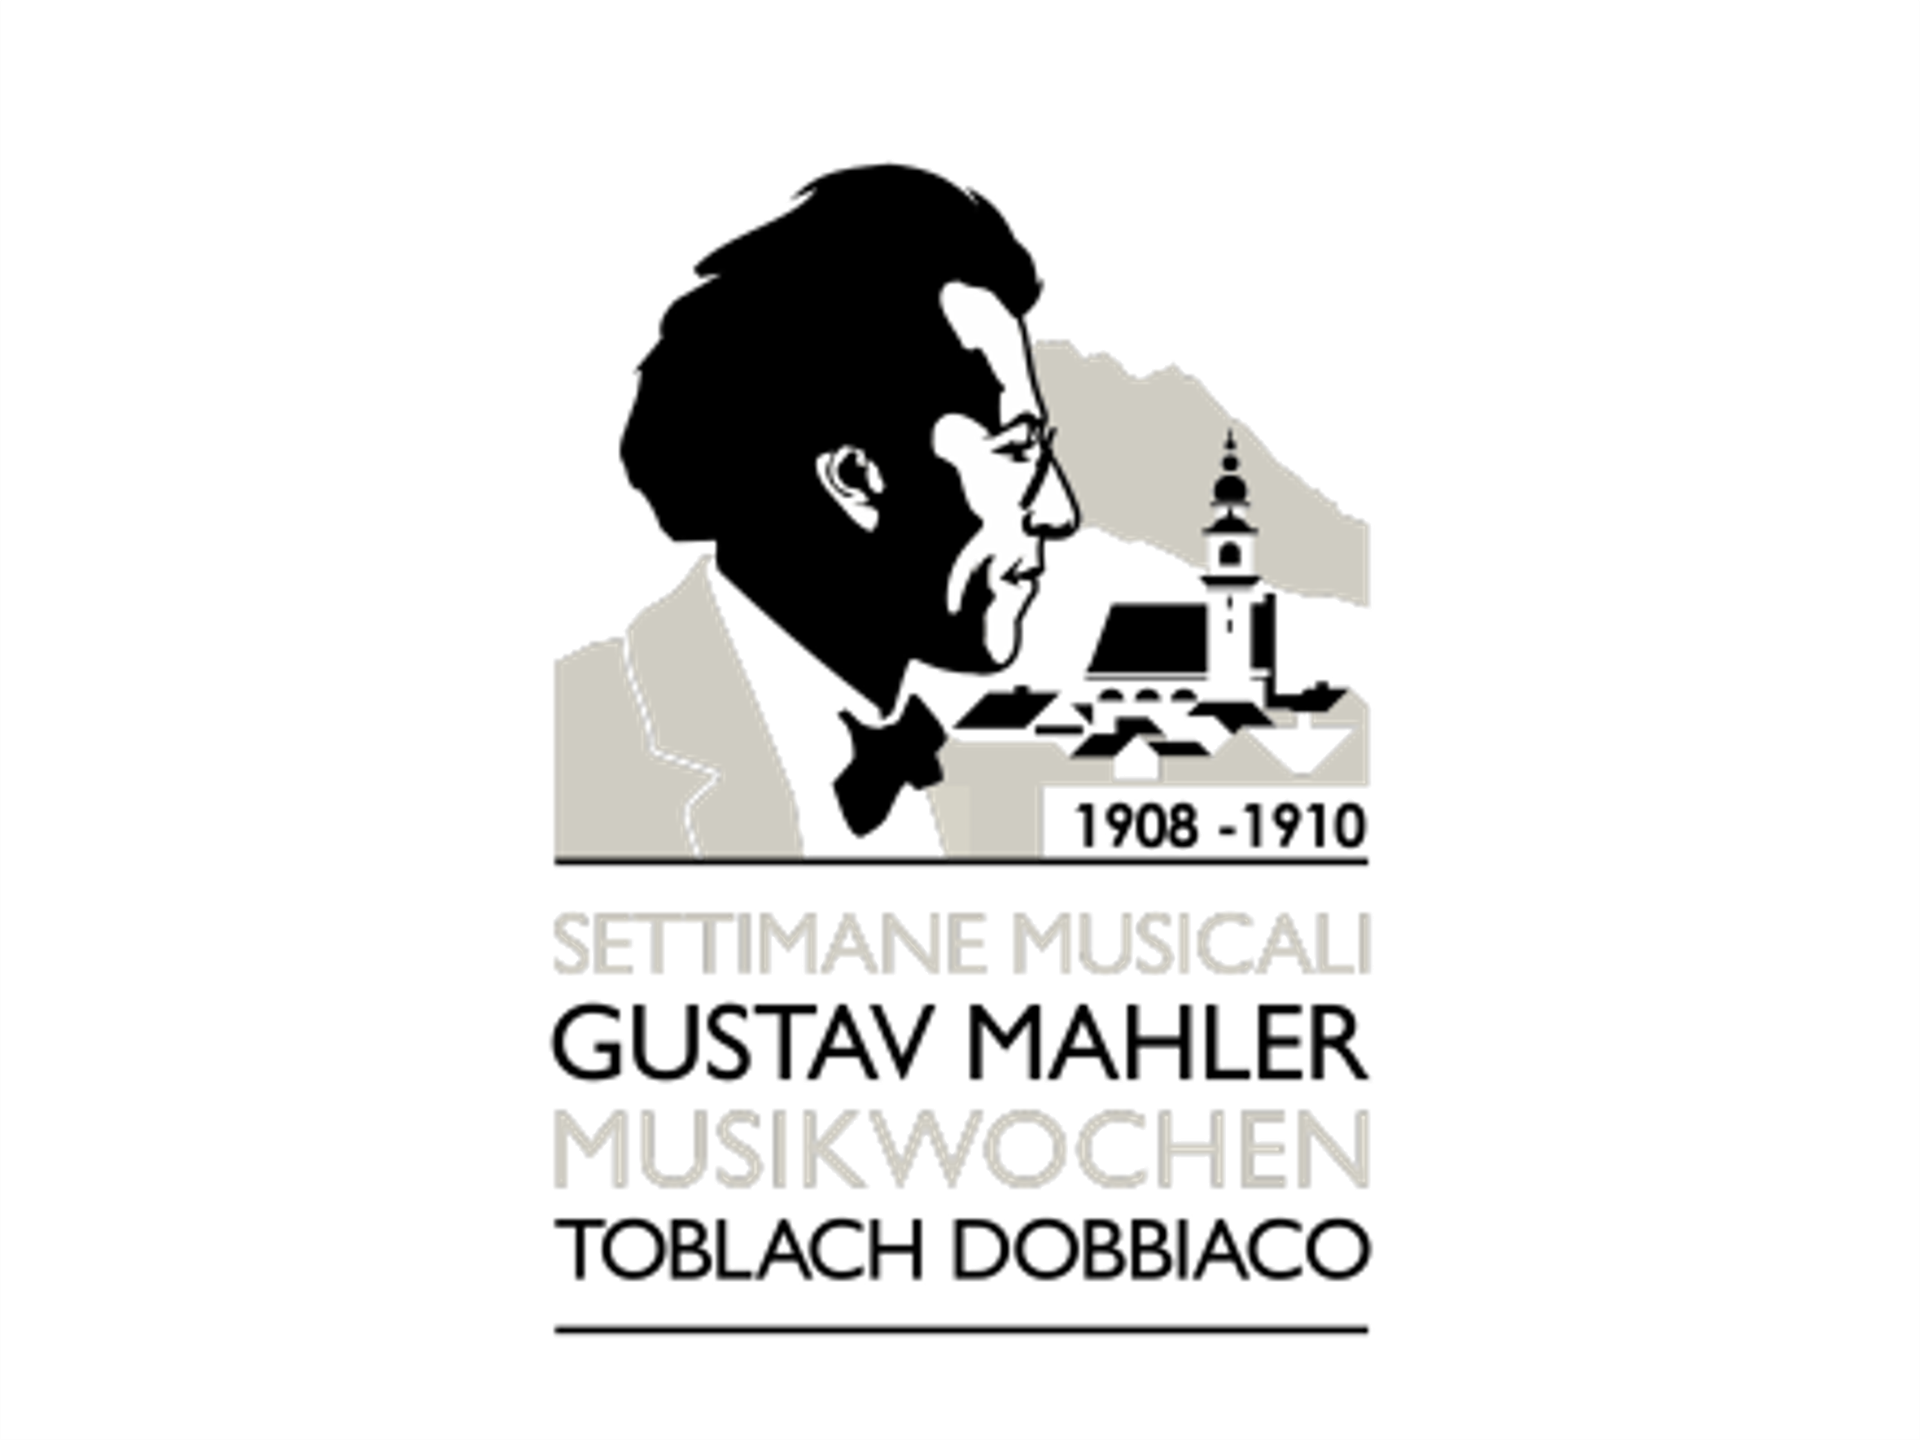 42. Gustav Mahler Musikwochen Toblach